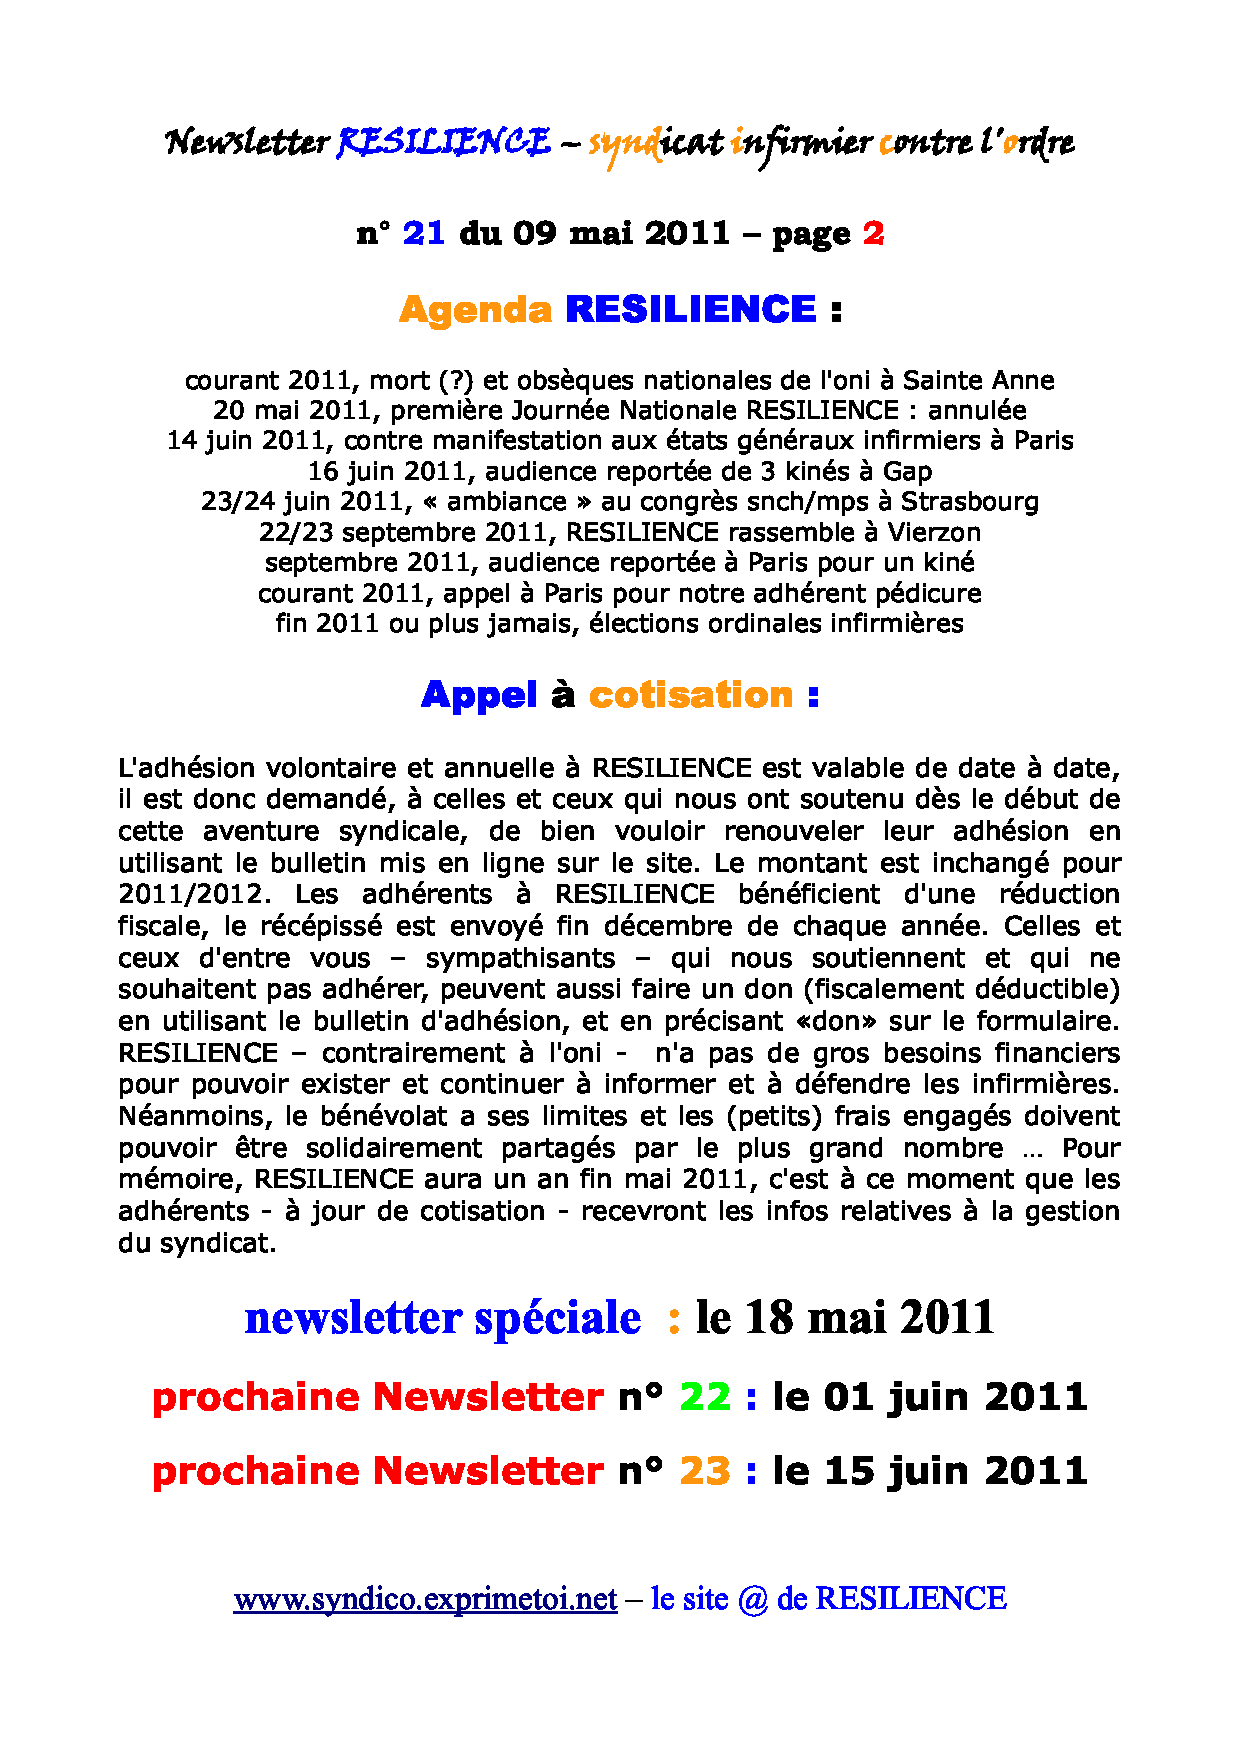 Newsletter RESILIENCE n° 21 du 09 mai 2011 1105130112351139708149918